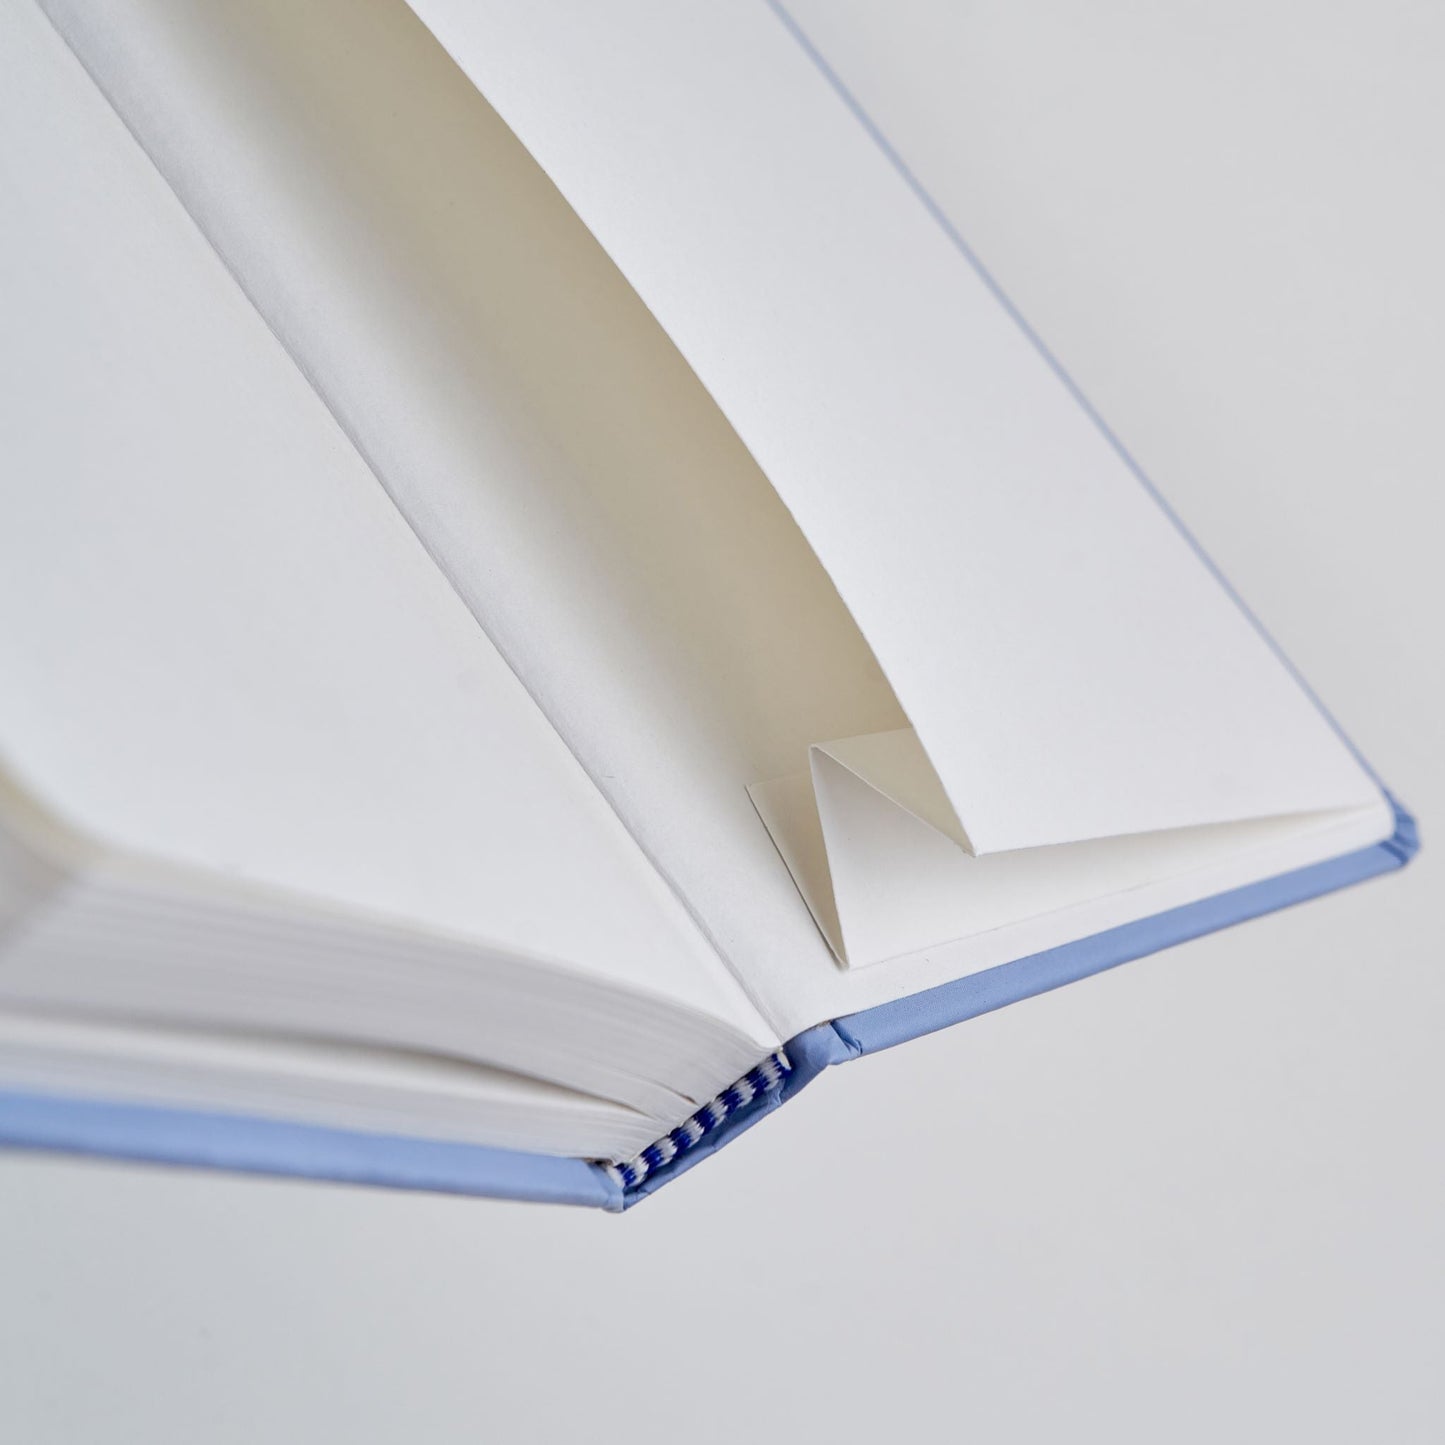 The Blue Sunset - Designer Hard Cover Notebooks